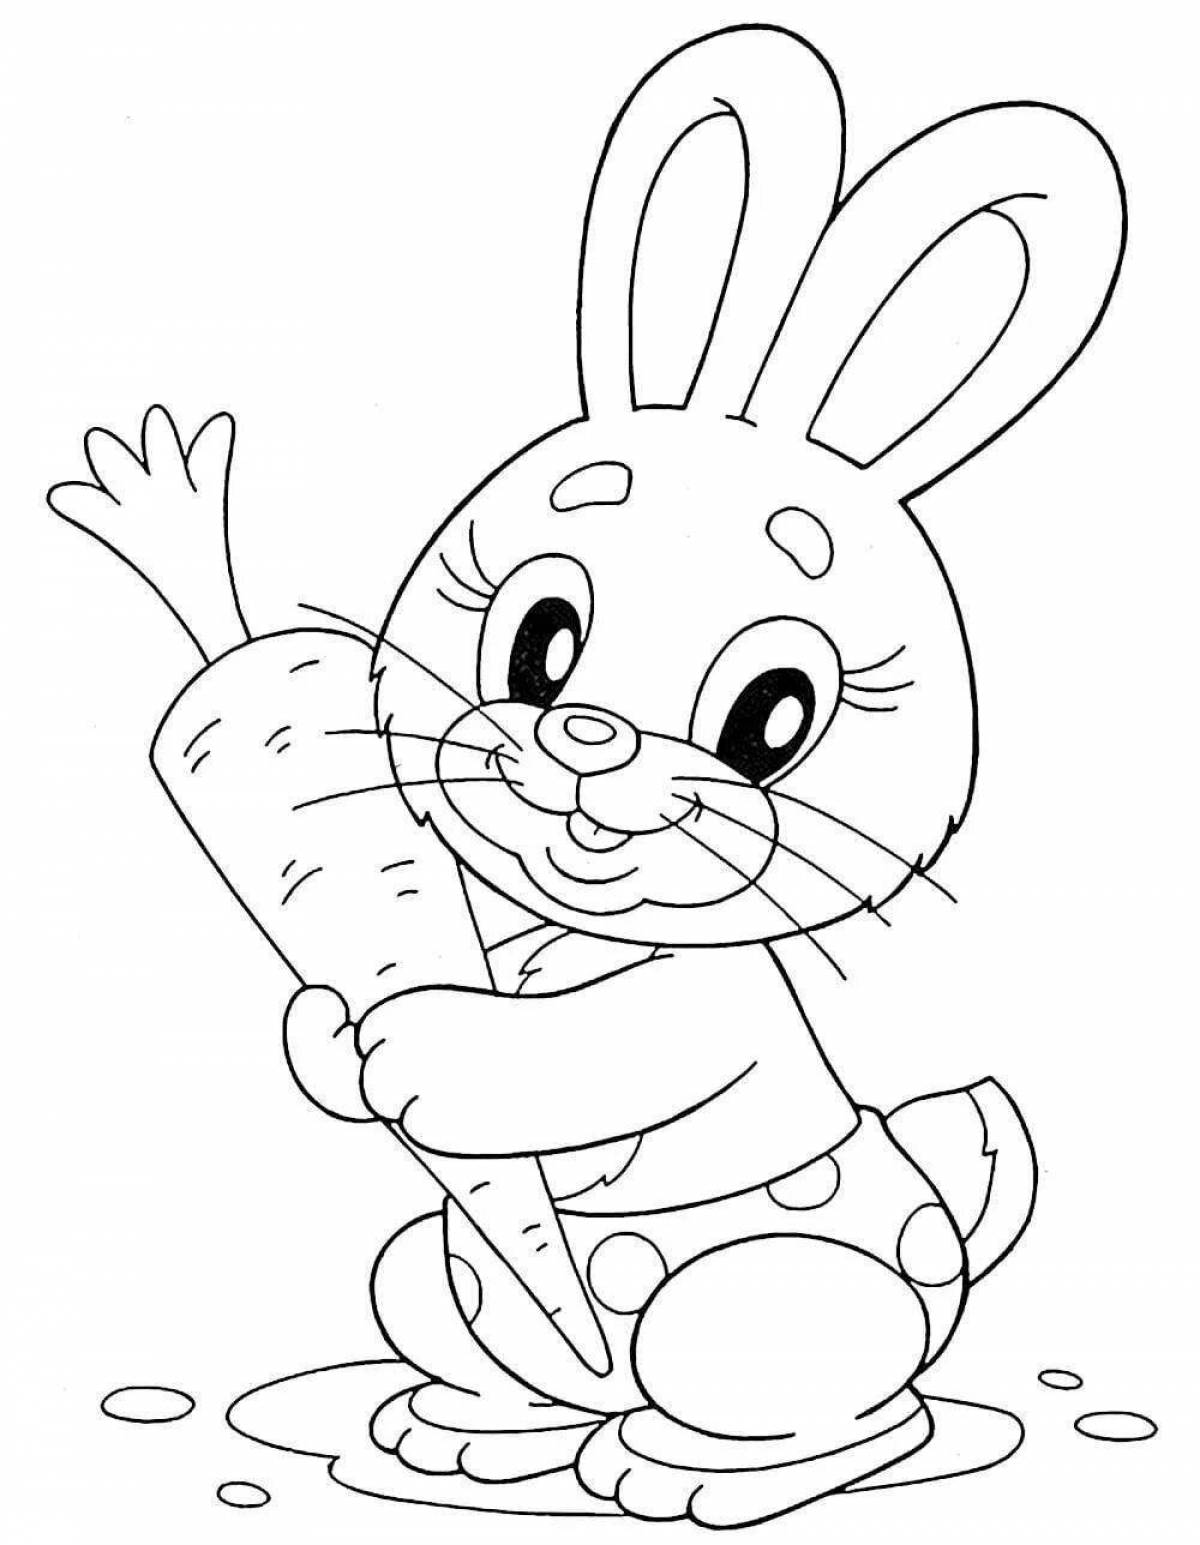 Яркая раскраска рисунок зайца для детей